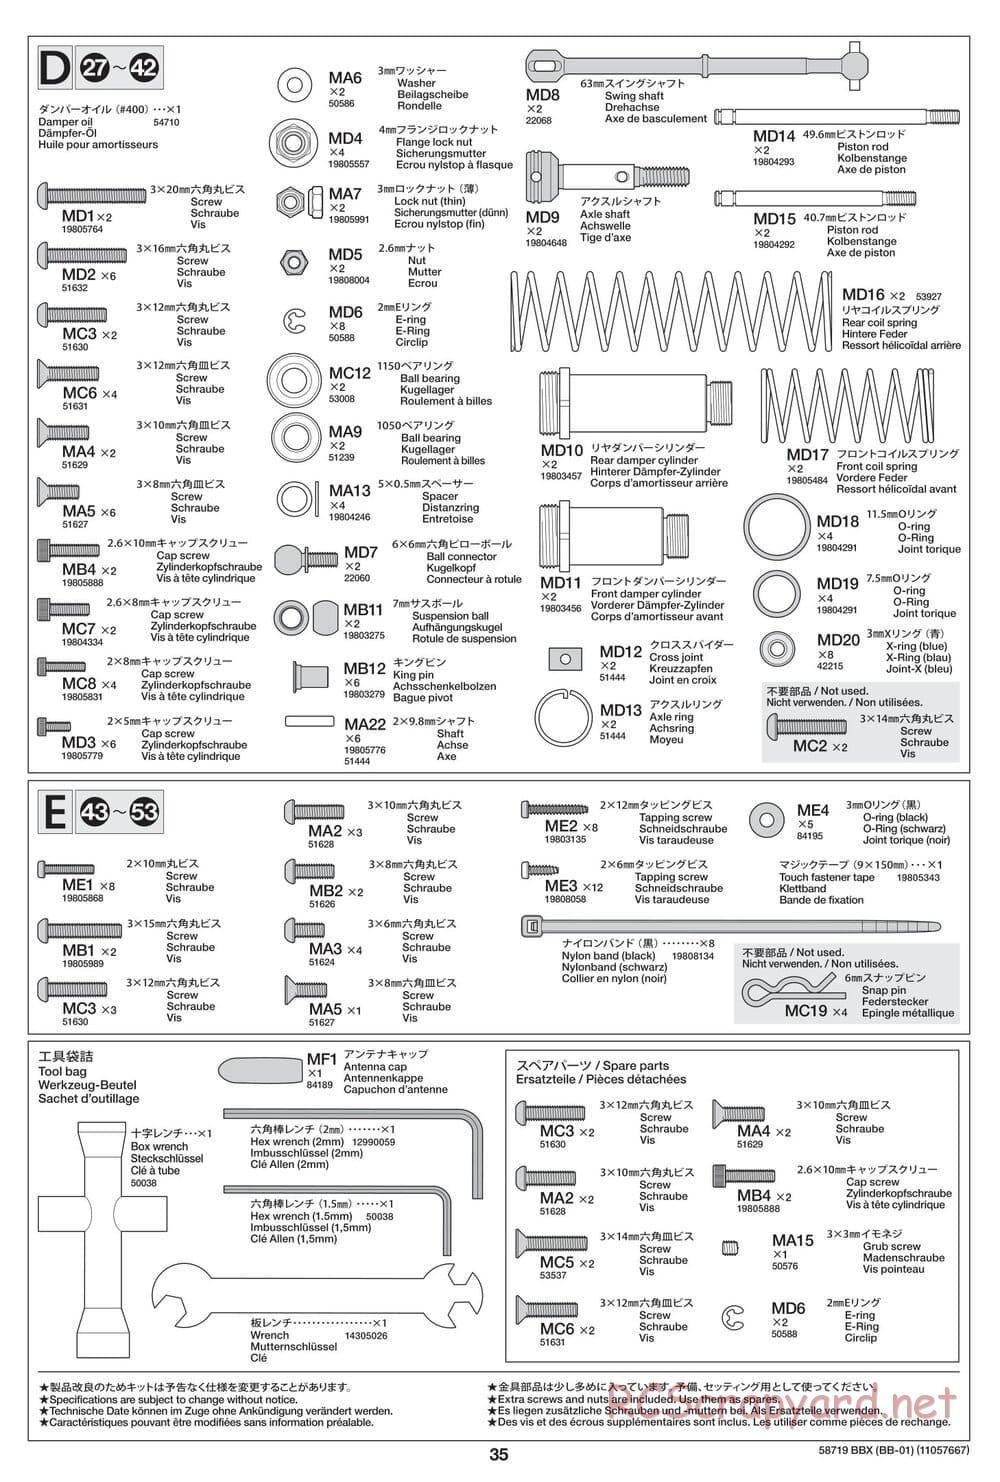 Tamiya - BBX - BB-01 Chassis - Manual - Page 35